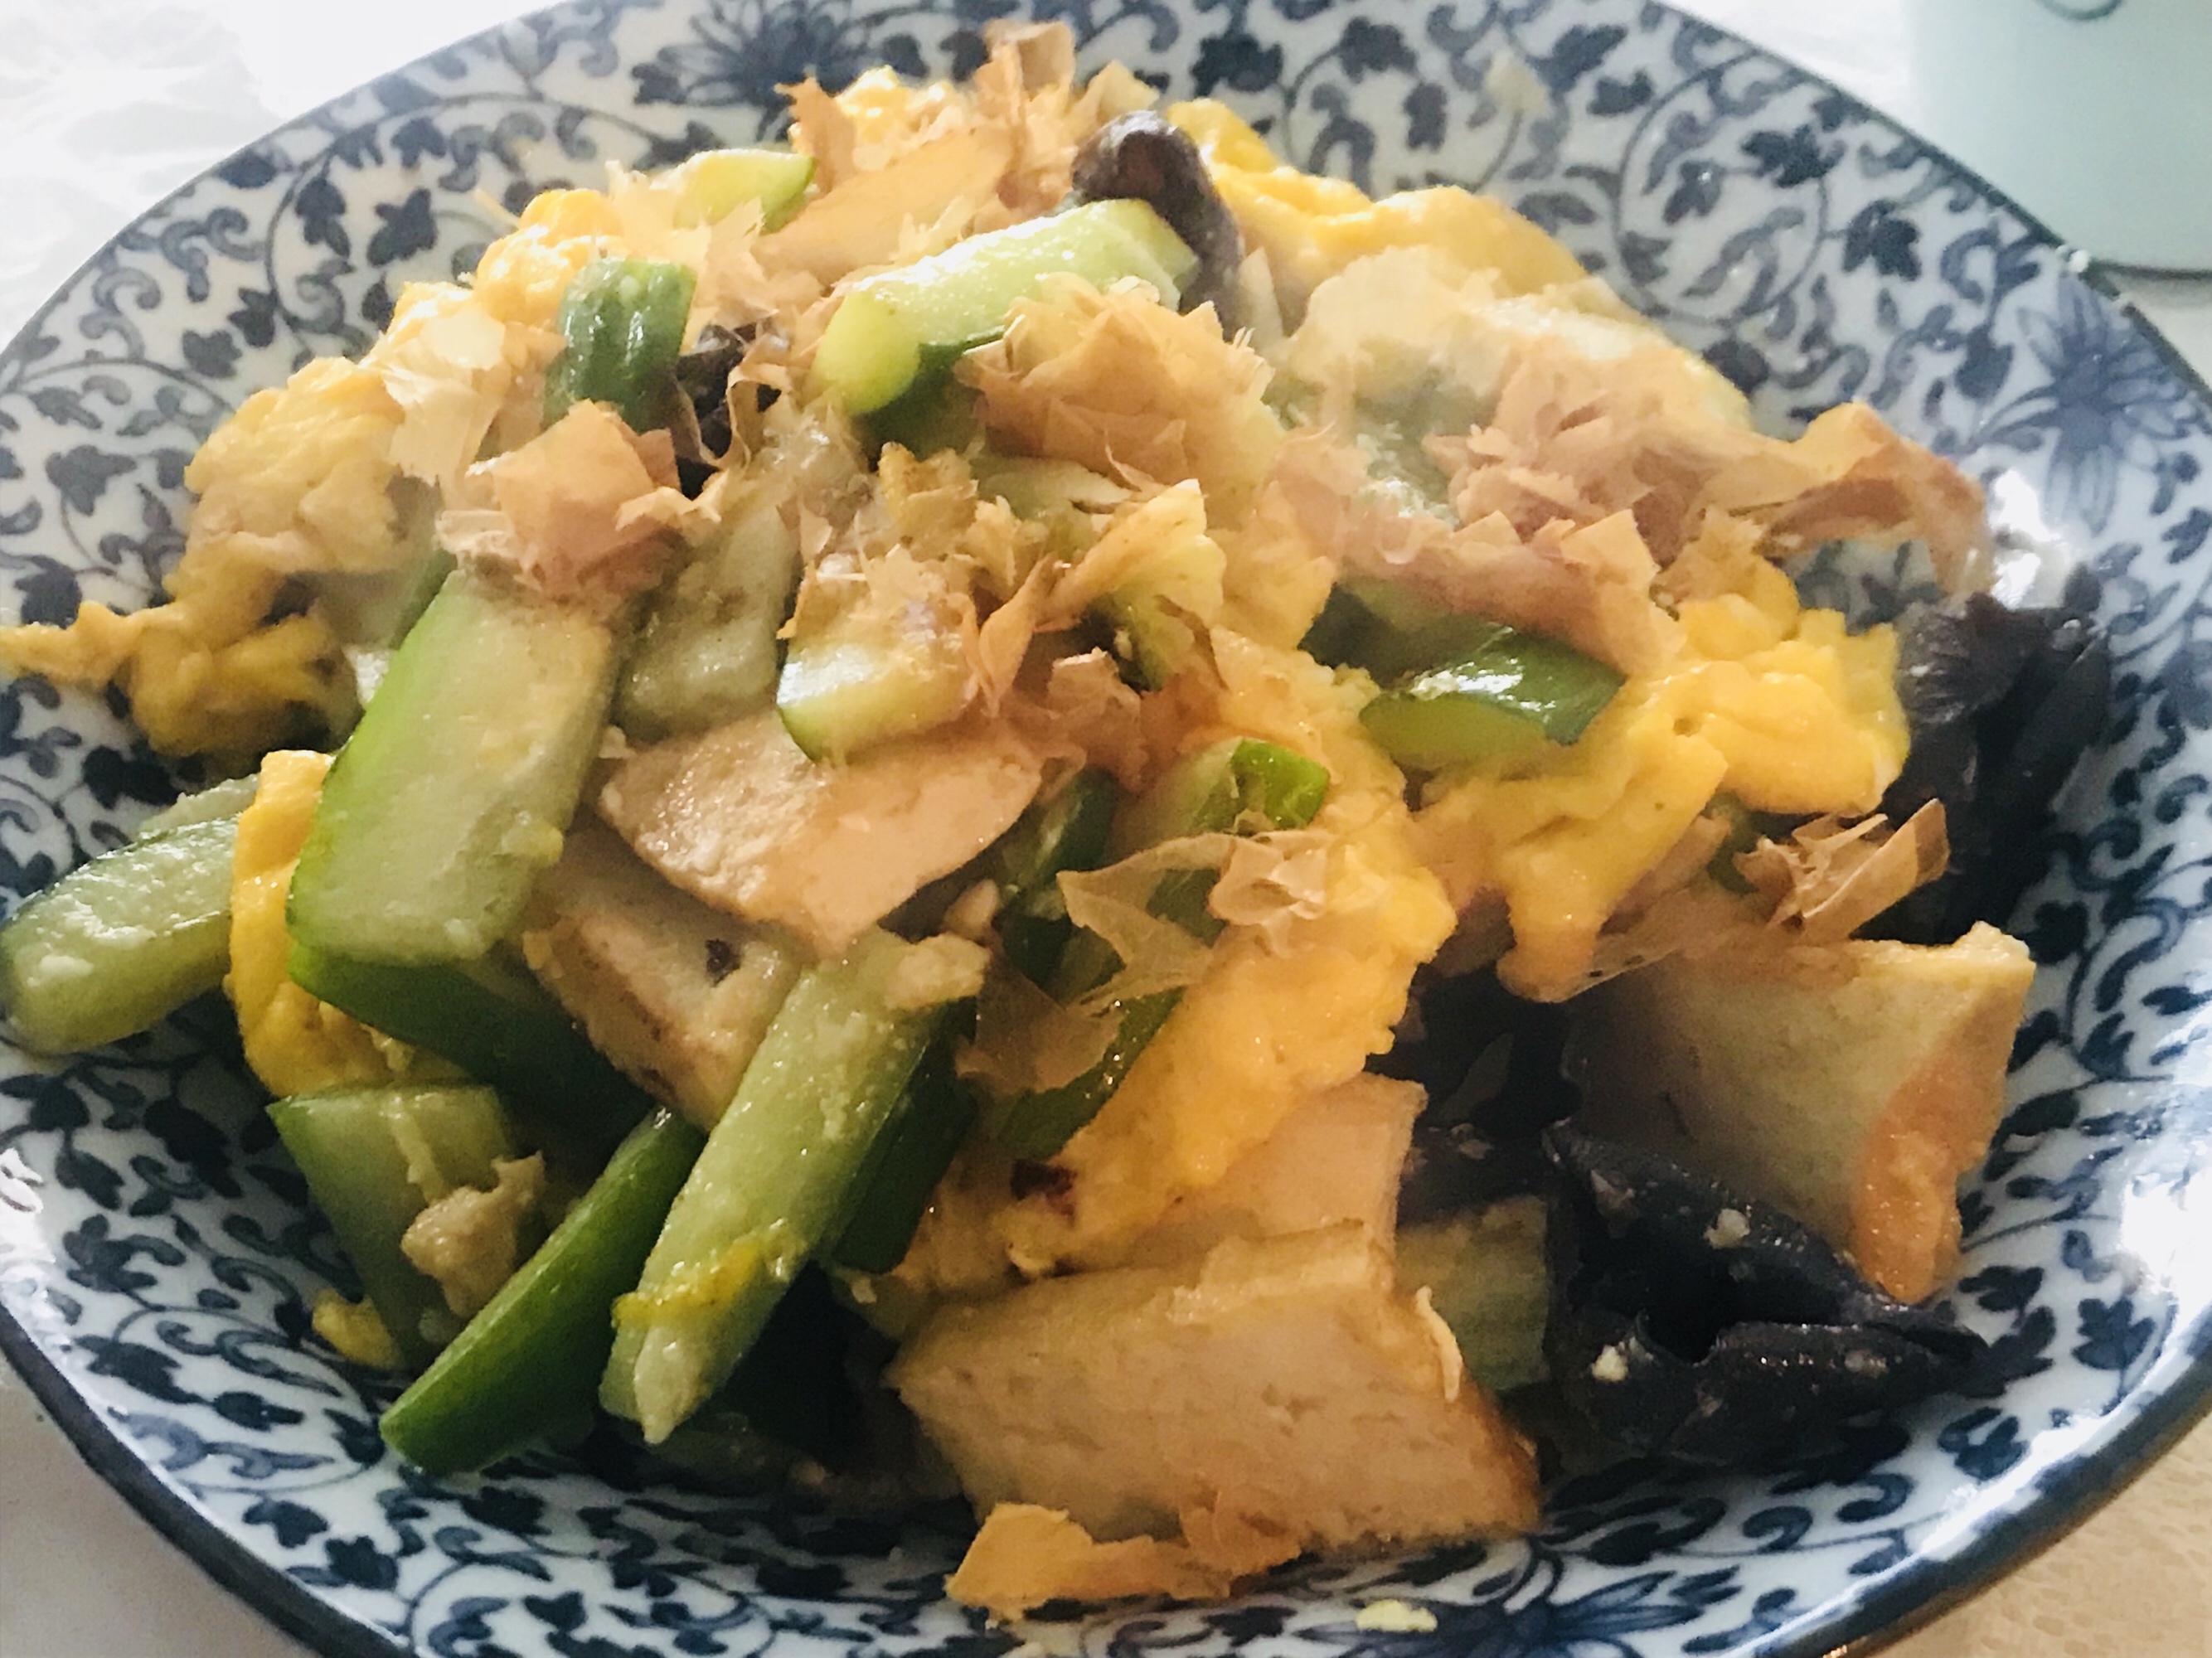 琉球料理之野菜炒豆腐的做法步骤图 会痛的石头856 下厨房